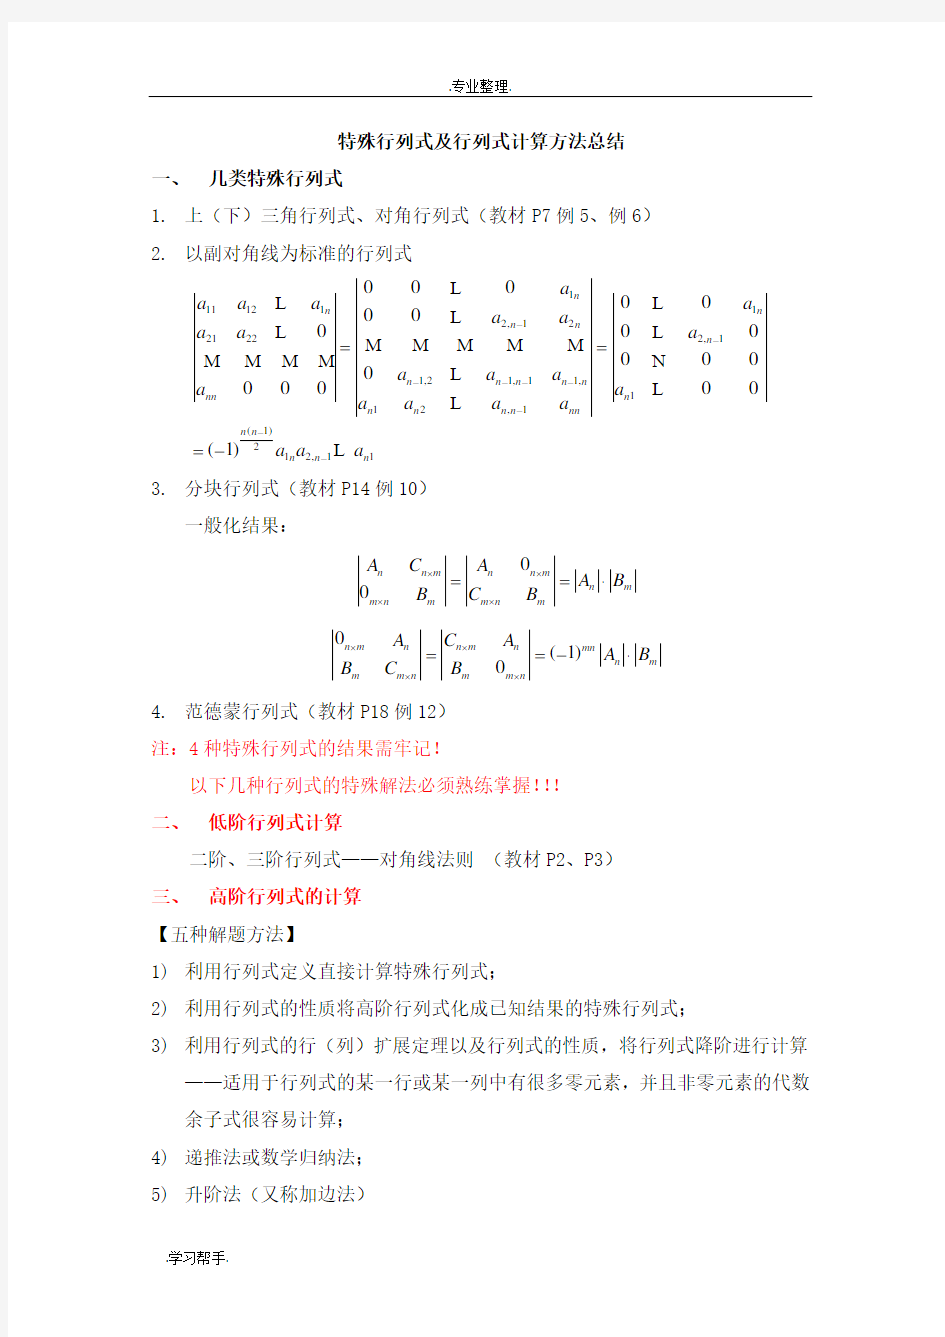 特殊行列式与行列式计算方法总结